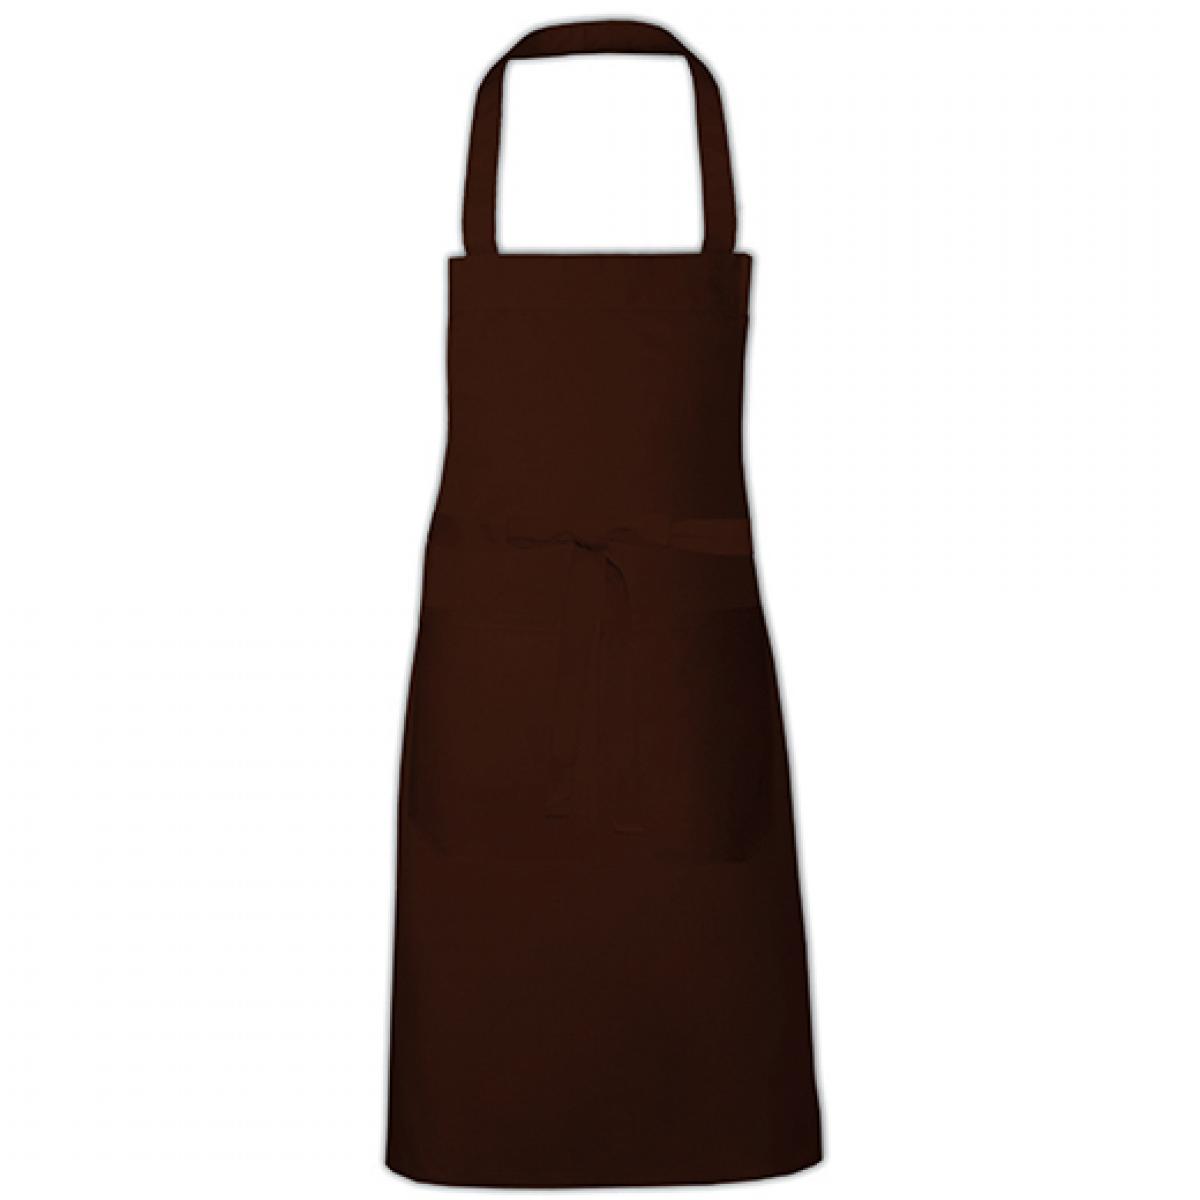 Hersteller: Link Kitchen Wear Herstellernummer: HS8073 Artikelbezeichnung: Hobby Apron - 73 x 80 cm - Waschbar bis 60 °C Farbe: Brown